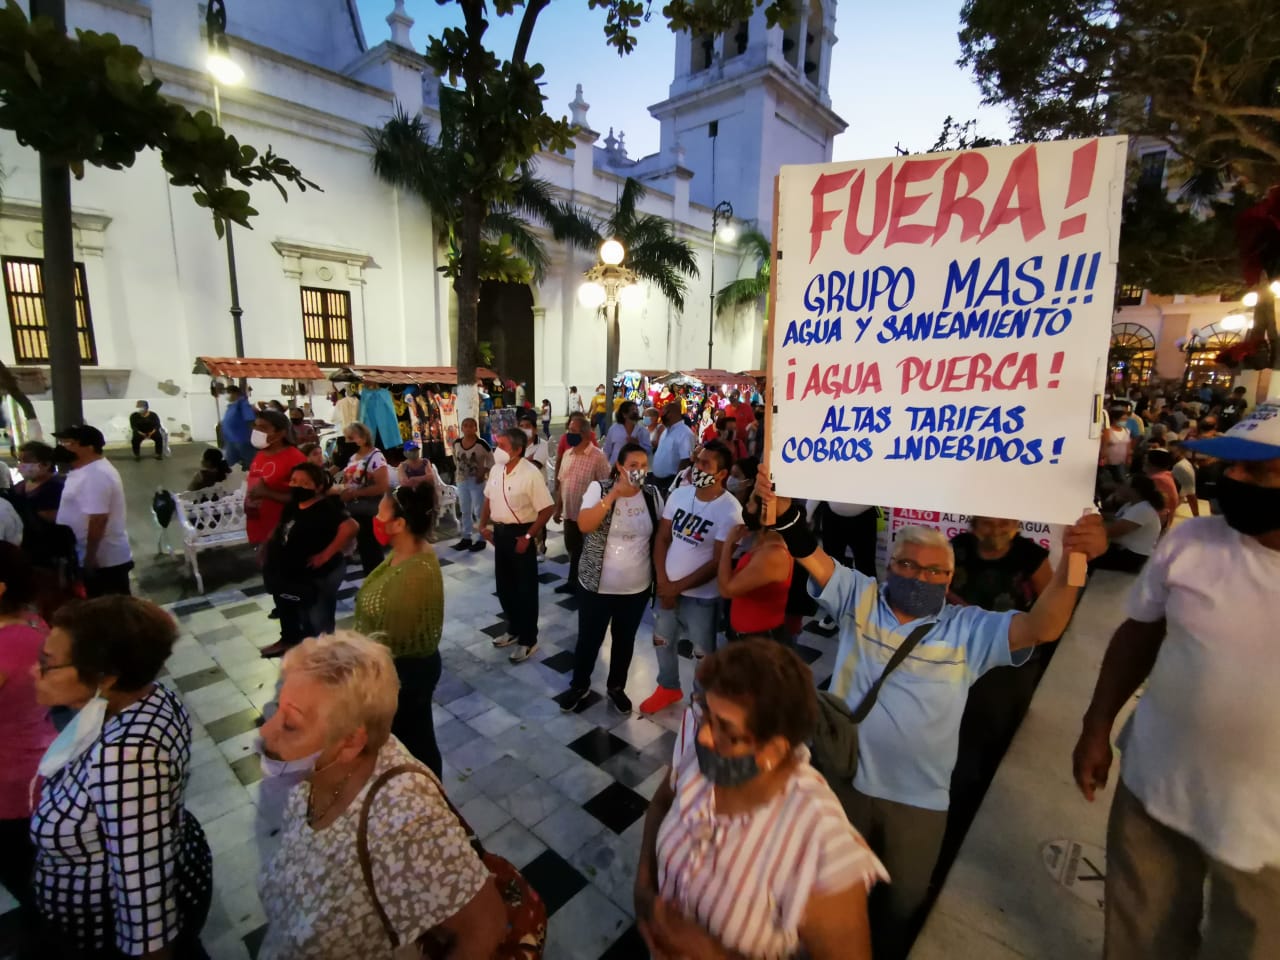 Ciudadanos porteños se manifiestan contra ayuntamiento de Veracruz, por problema de agua potable